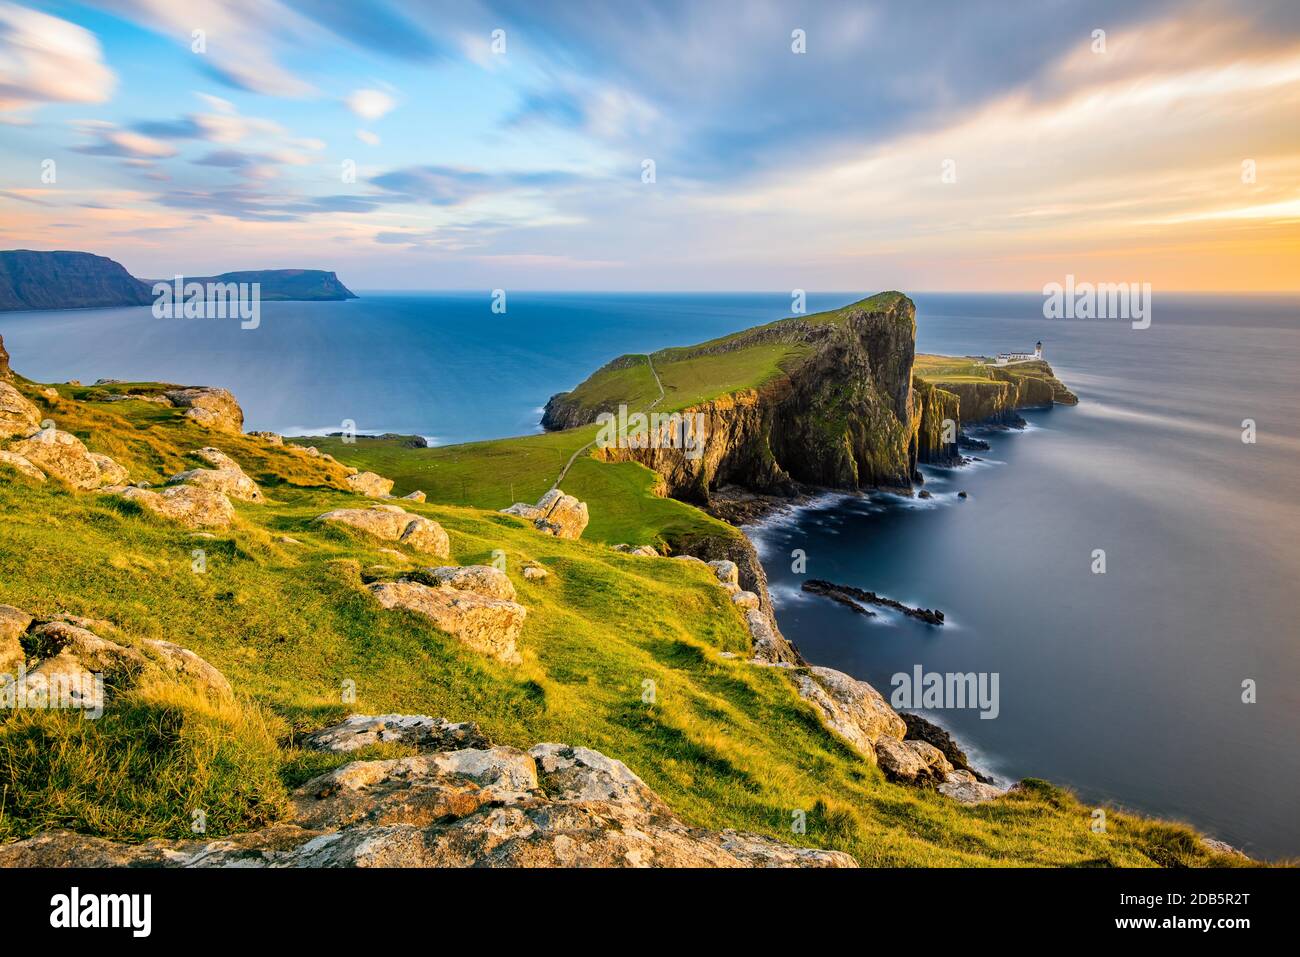 Le phare de Neist point sur l'île de Skye baignait de lumière dorée du soleil couchant. Banque D'Images